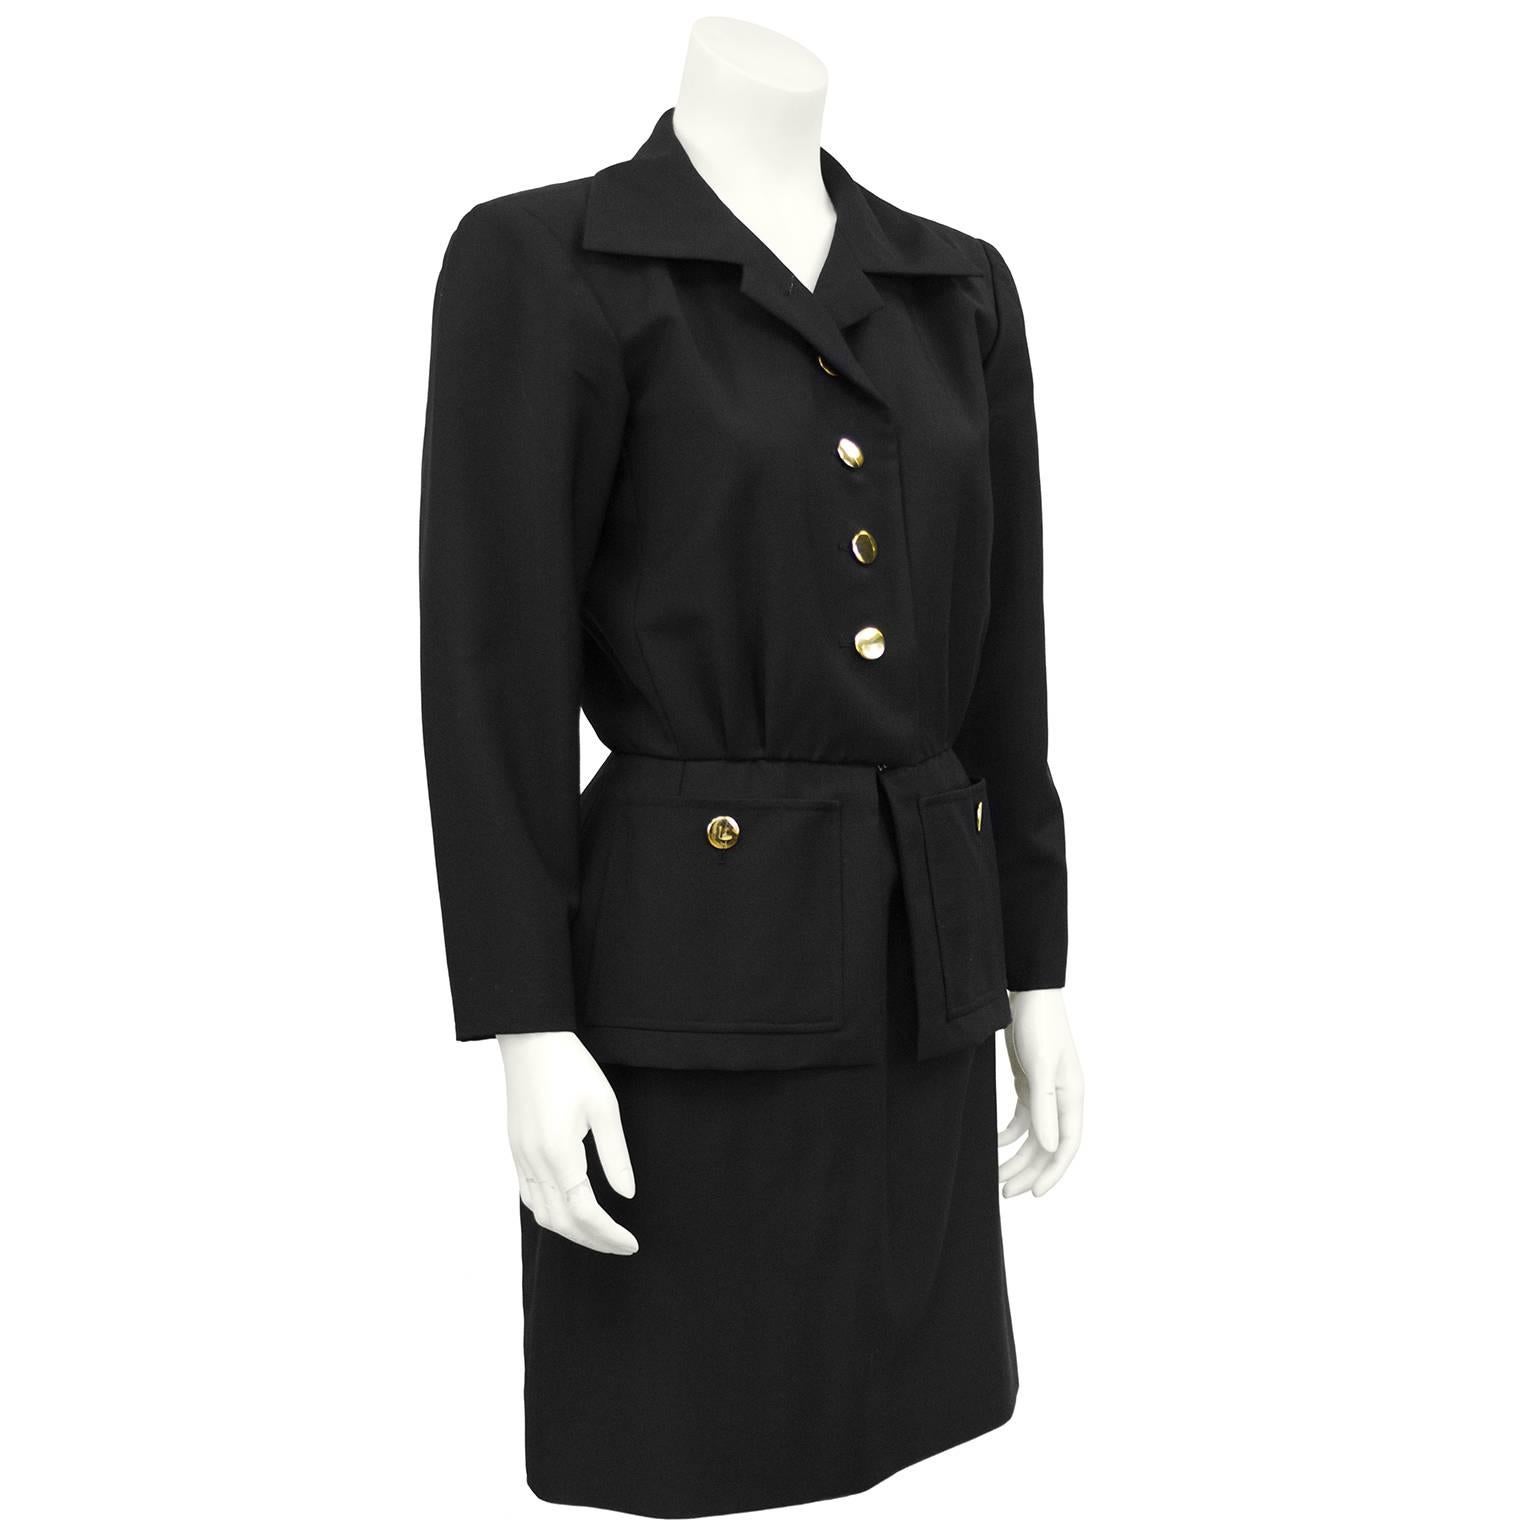 Costume jupe en gabardine de laine noire YSL/Yves Saint Laurent des années 1980. Le revers large a une petite encoche et la veste a des boutons en forme de disque doré sur le devant et un crochet plat caché à la taille. Ajusté à la taille naturelle